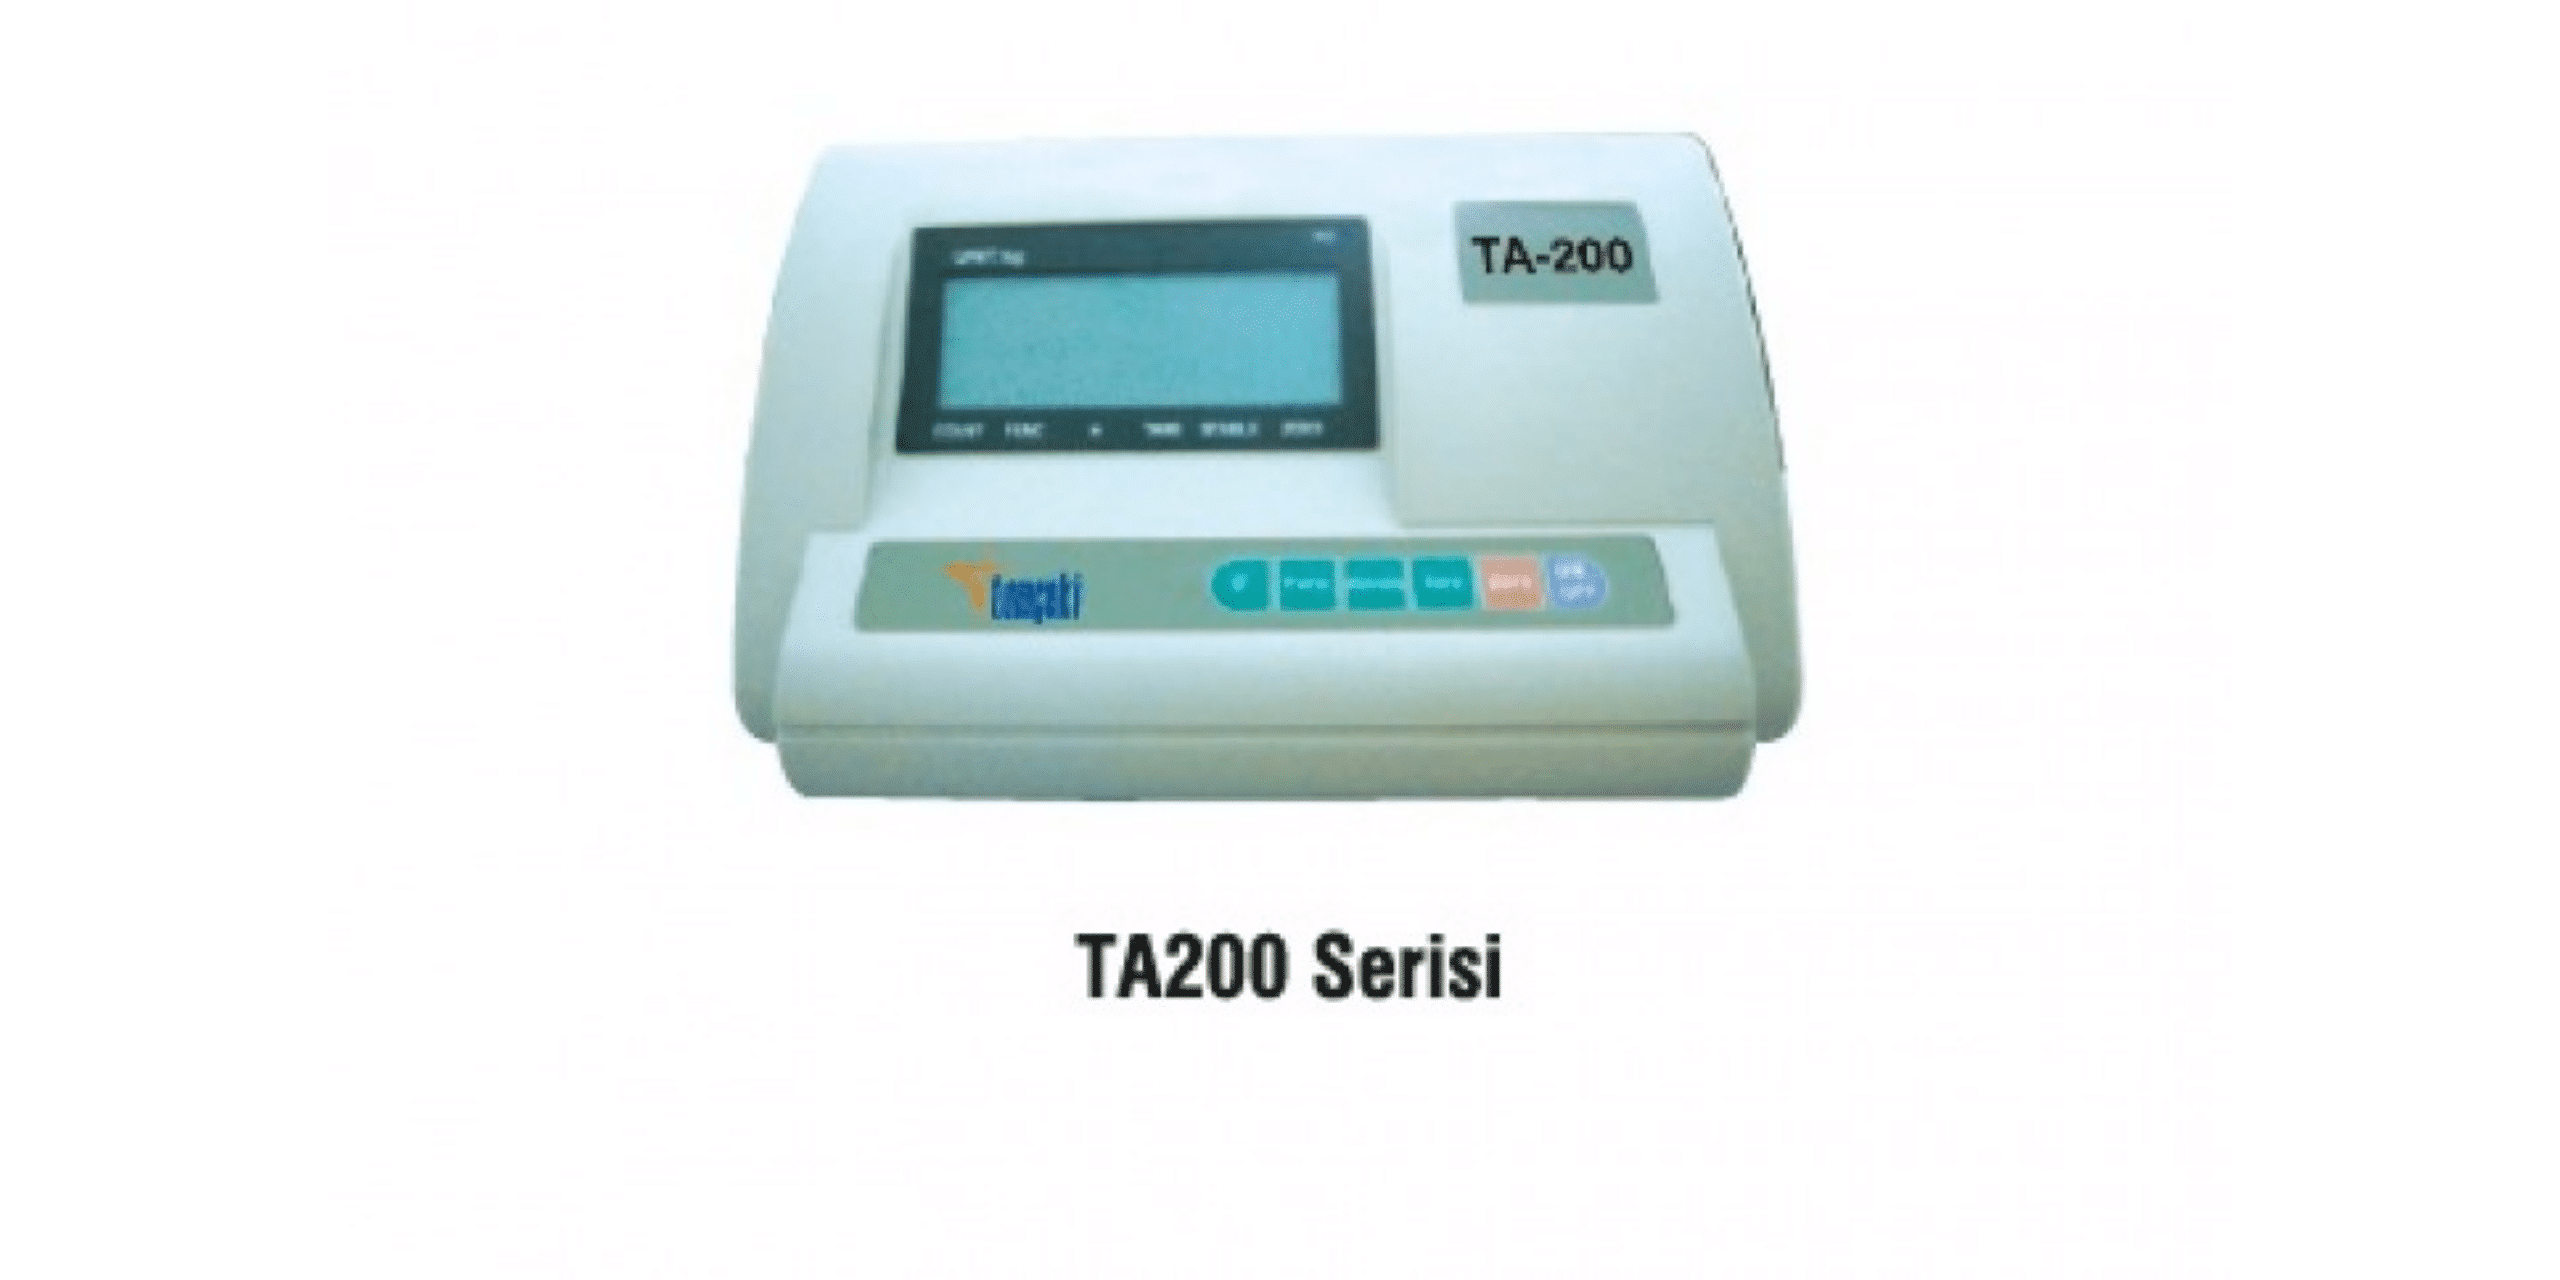 TA200 Series Weighing Indicator